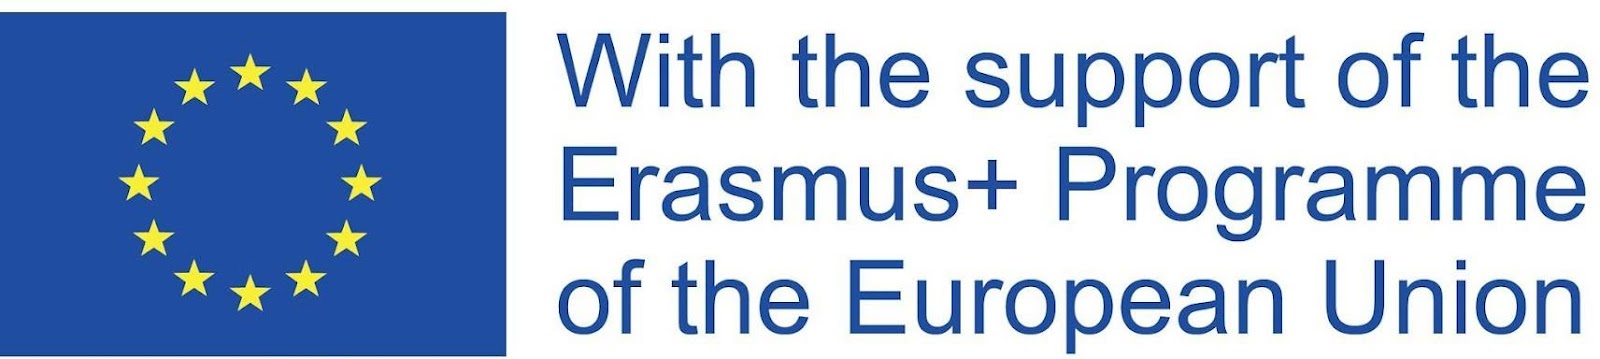 Erasmus project